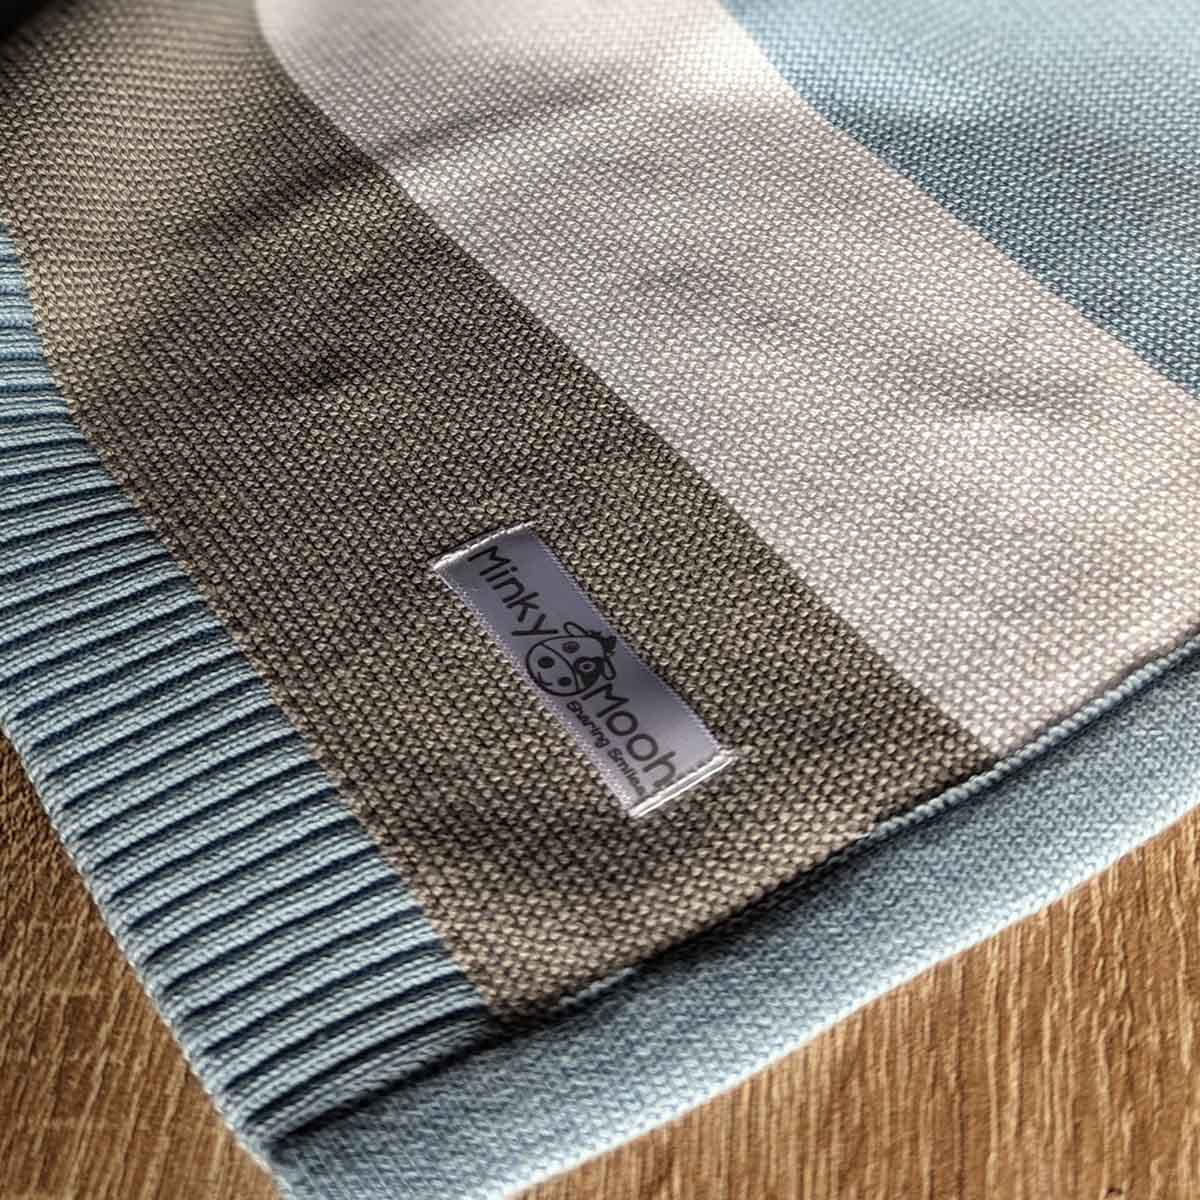 Nahaufnahme der Strick-Textur einer blau-weiß-grauen Bio-Baumwolldecke mit Logo-Etikett 'Minky Mooh'